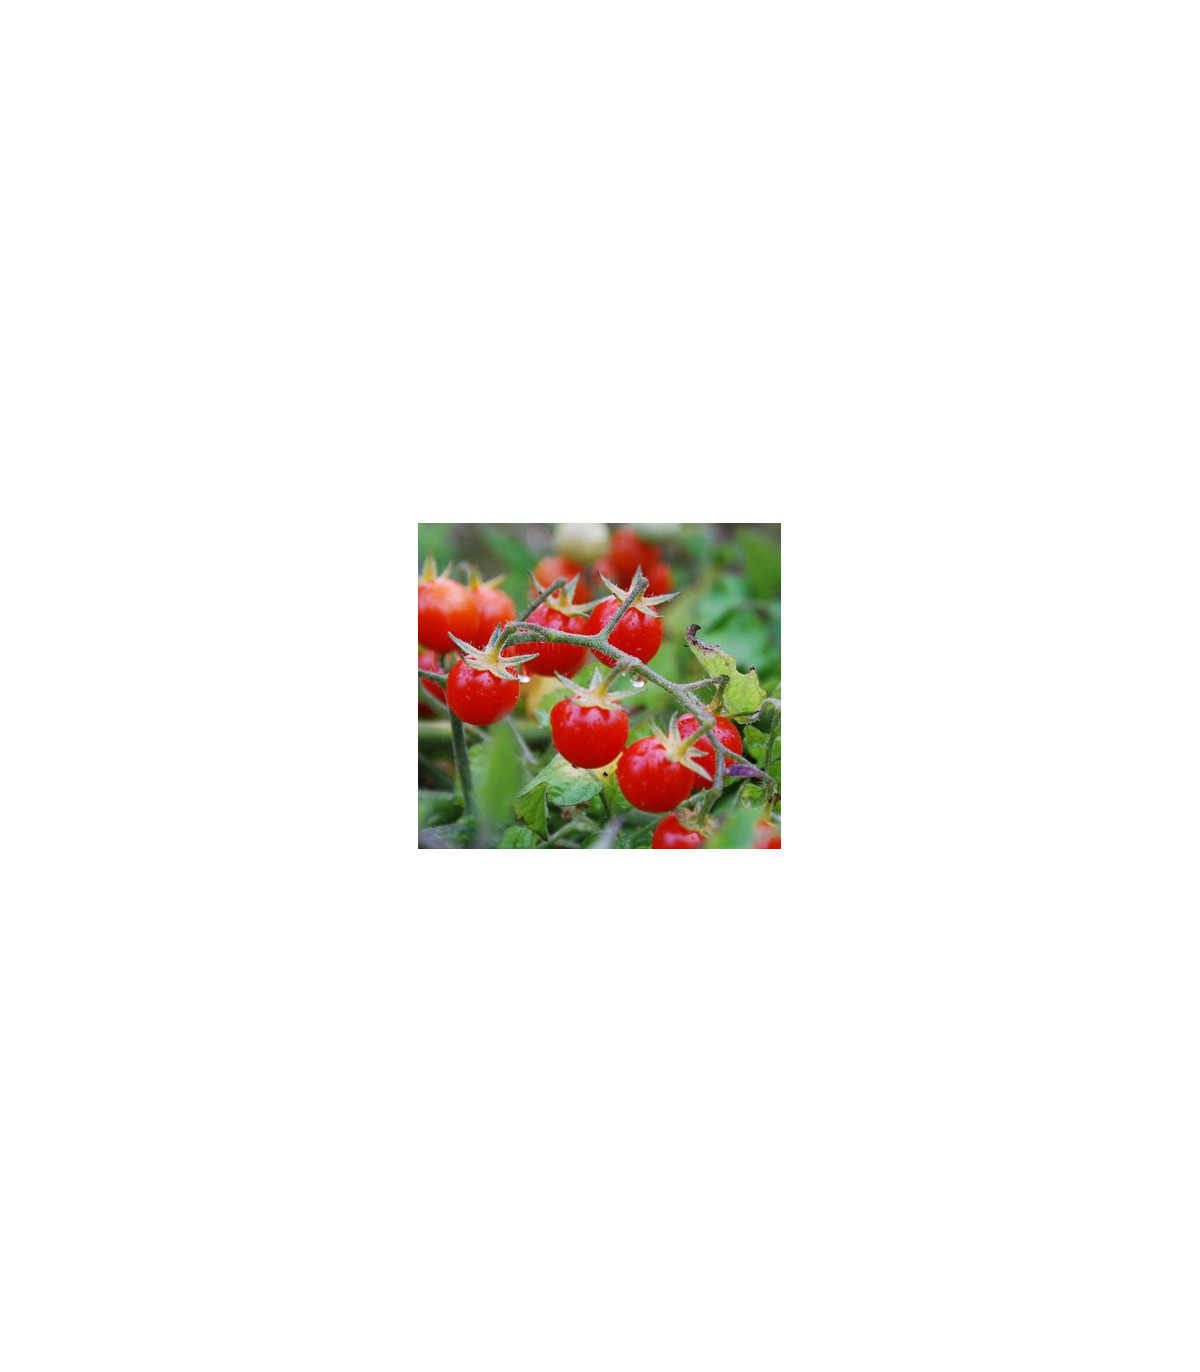 Divoké rajče řervené - Lycopersicon pimpinellifolium - prodej semen divokých rajčat - 6 ks